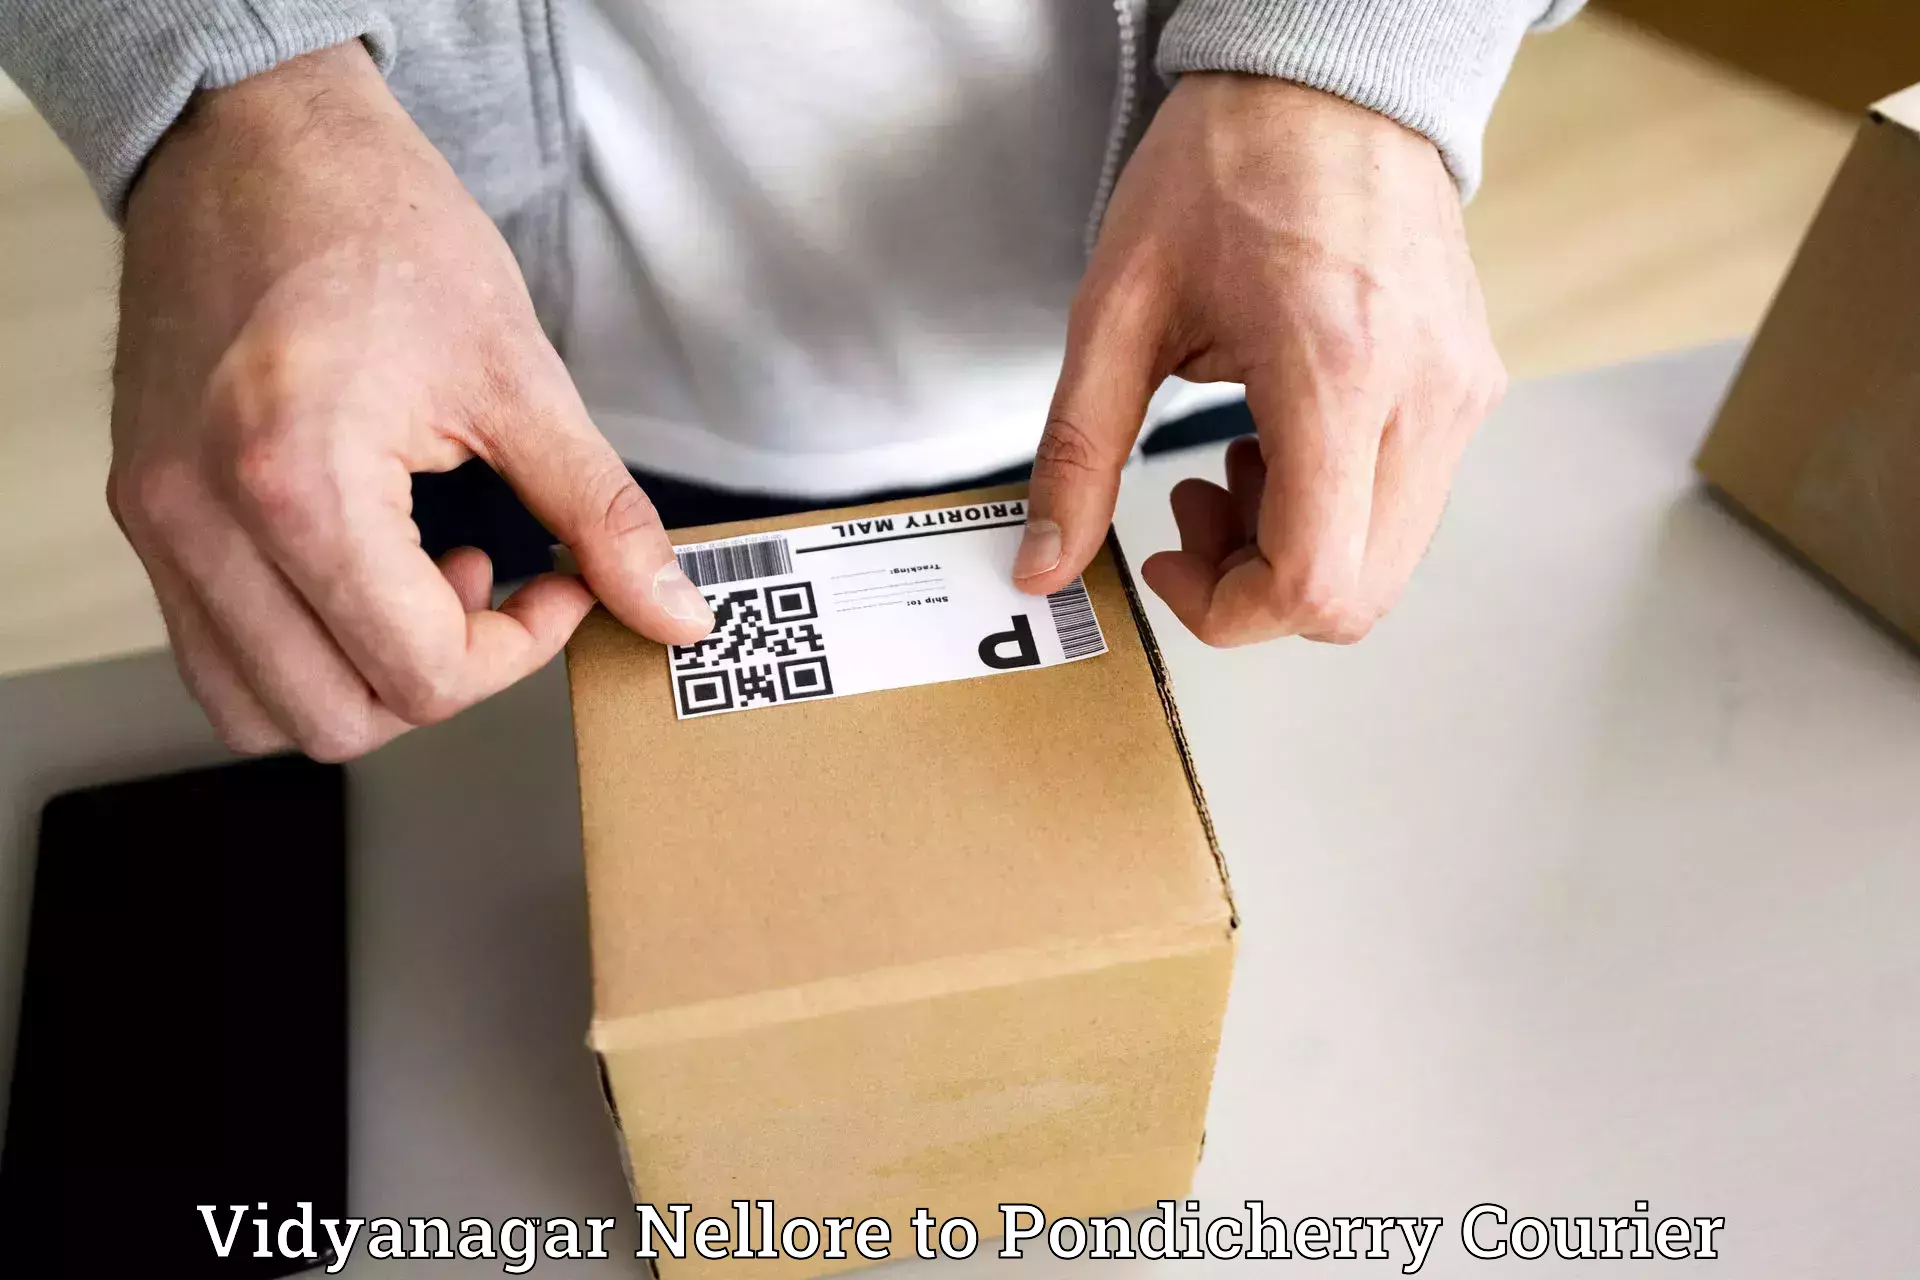 Express package handling Vidyanagar Nellore to Pondicherry